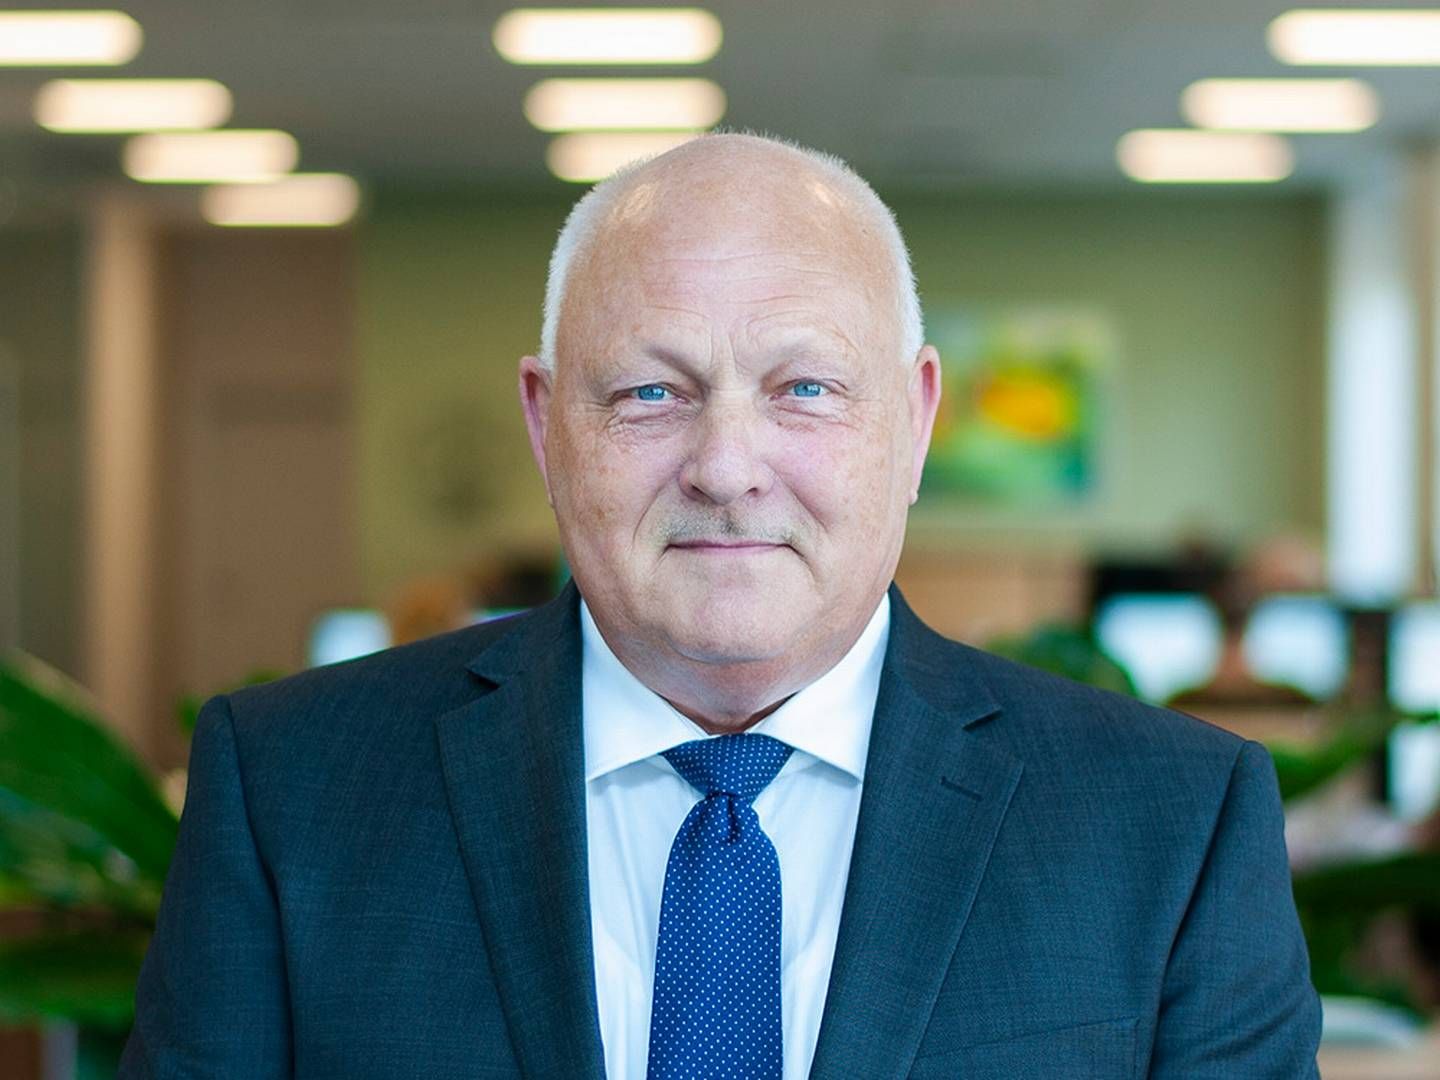 Nordfyns Bank med Holger Bruun som adm. direktør venter i år et overskud på 70-100 mio. kr. | Foto: PR/Nordfyns Bank